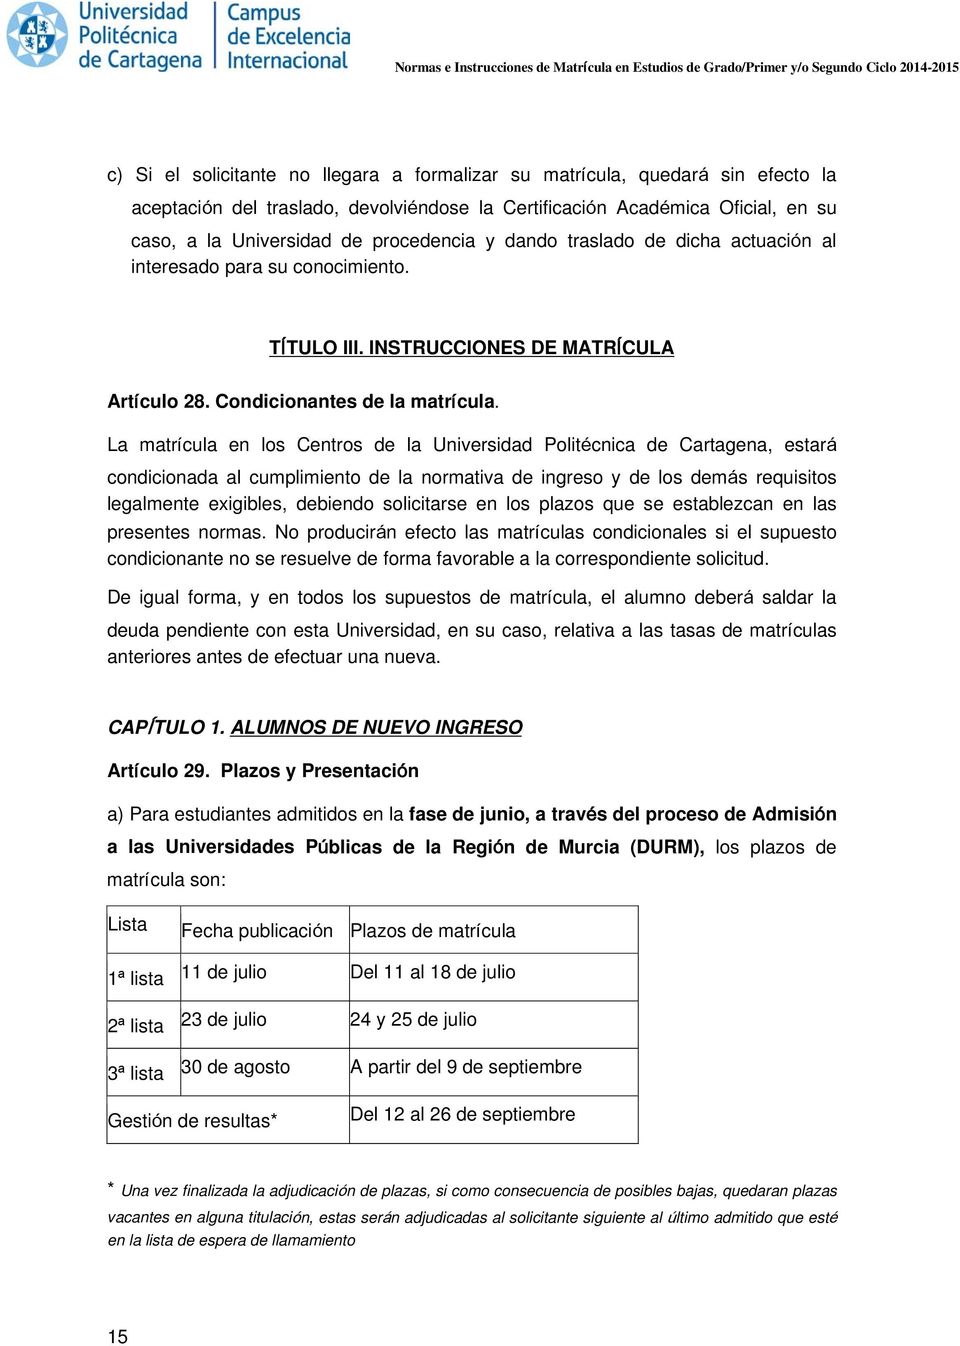 La matrícula en los Centros de la Universidad Politécnica de Cartagena, estará condicionada al cumplimiento de la normativa de ingreso y de los demás requisitos legalmente exigibles, debiendo